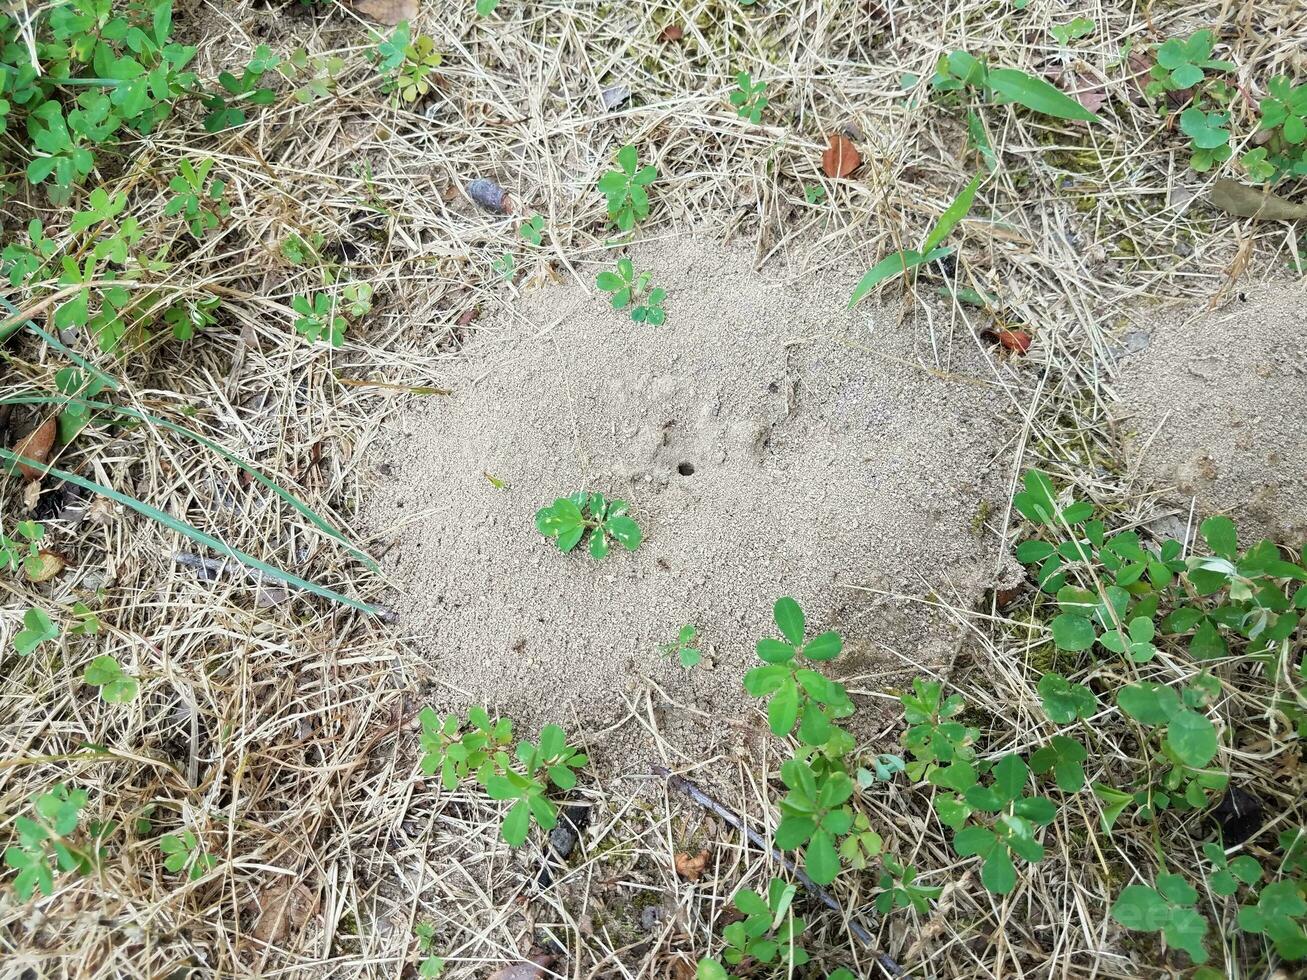 fourmilière de terre ou monticule et herbe photo